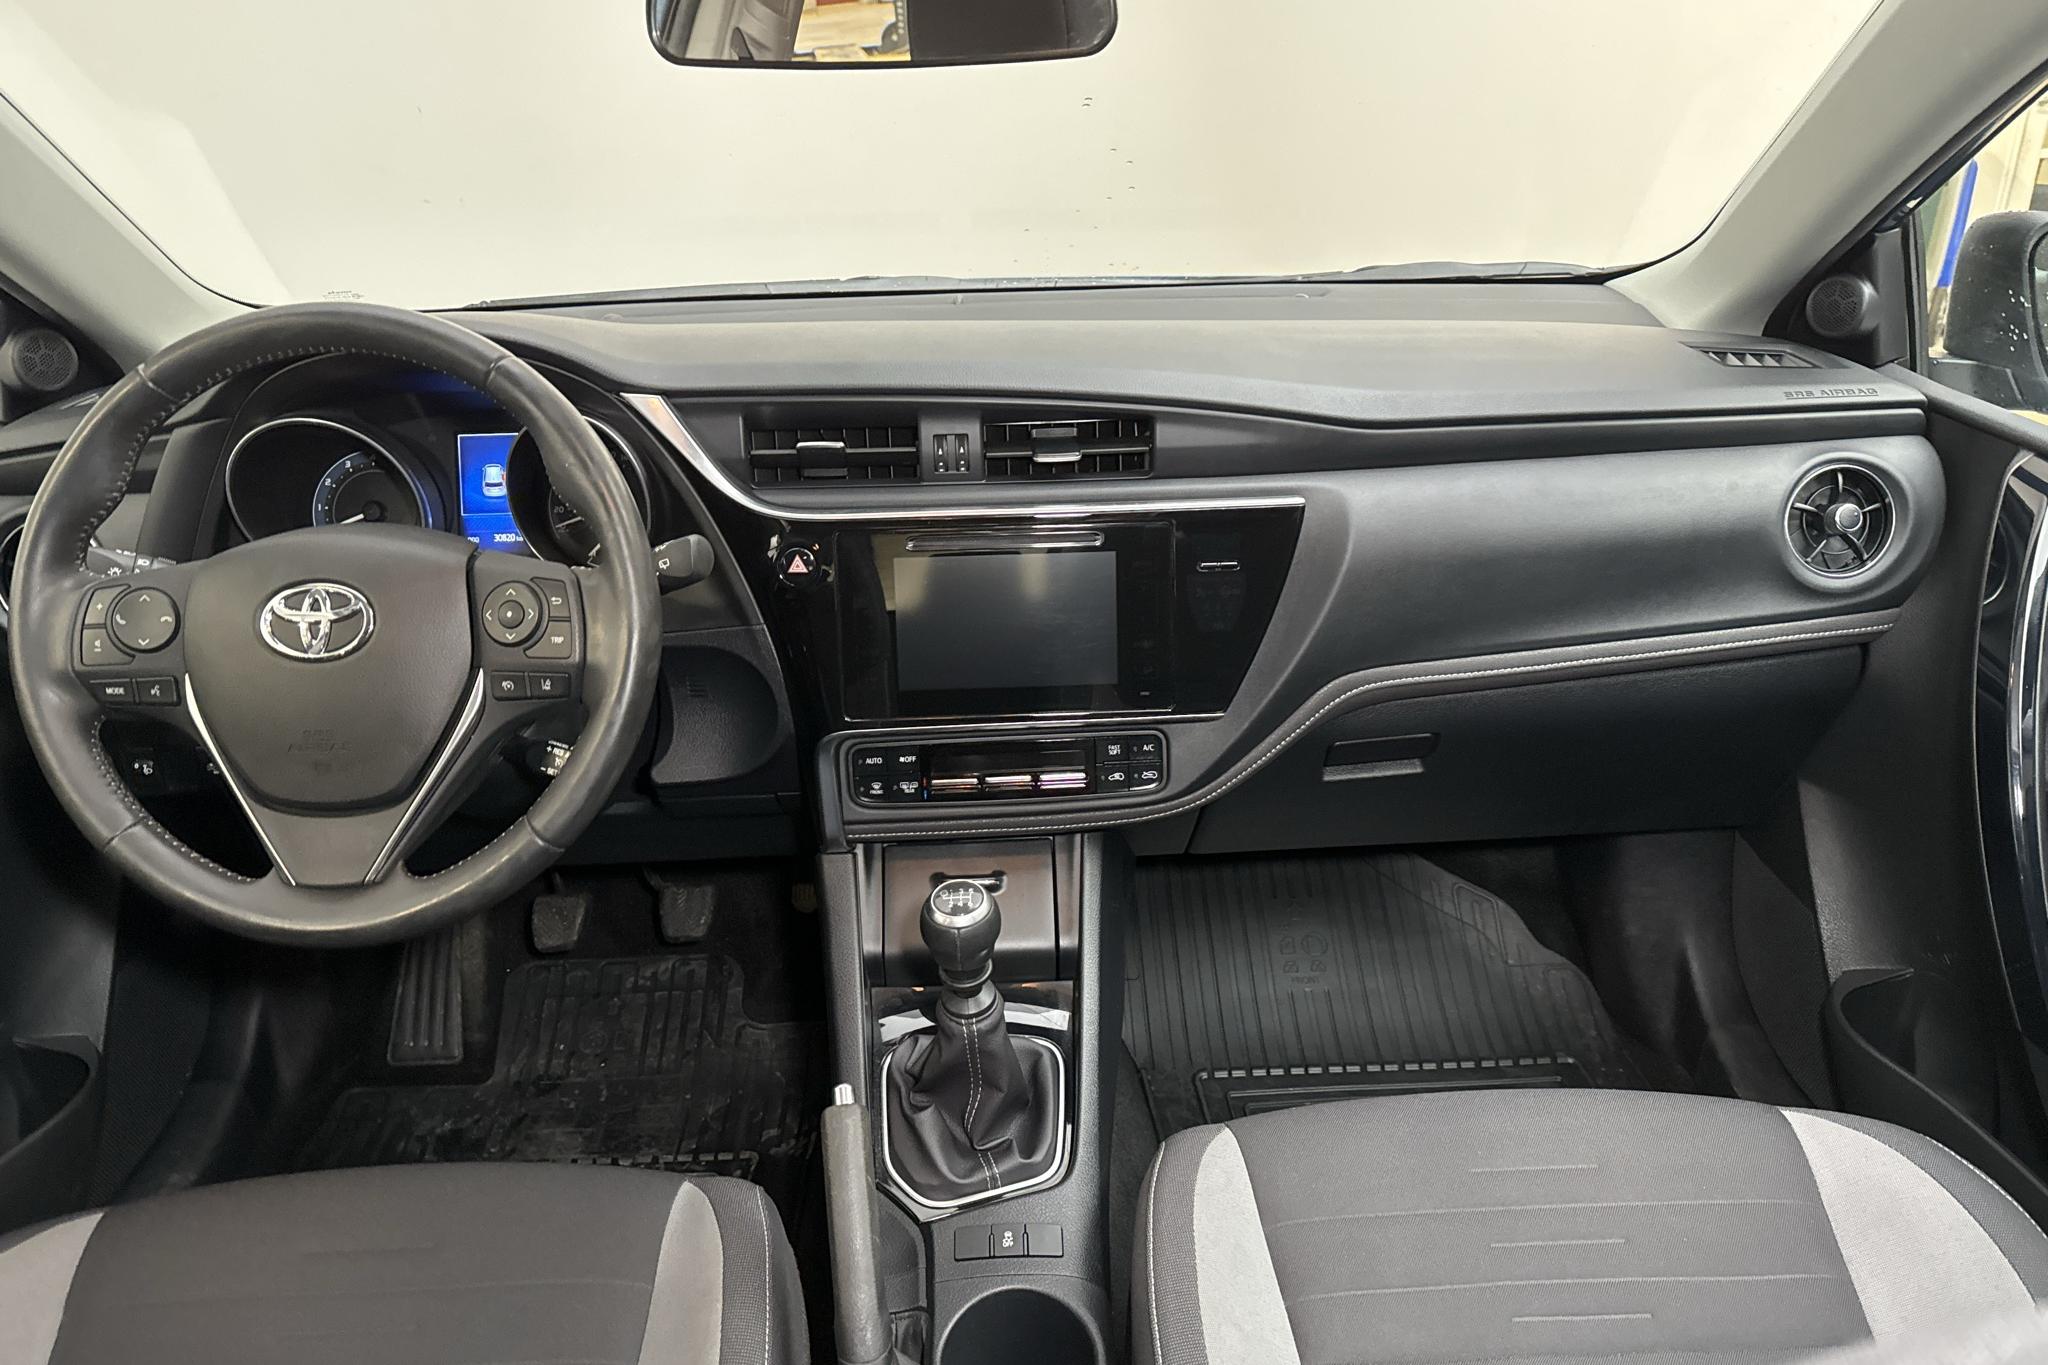 Toyota Auris 1.2T 5dr (116hk) - 30 820 km - Manual - blue - 2016